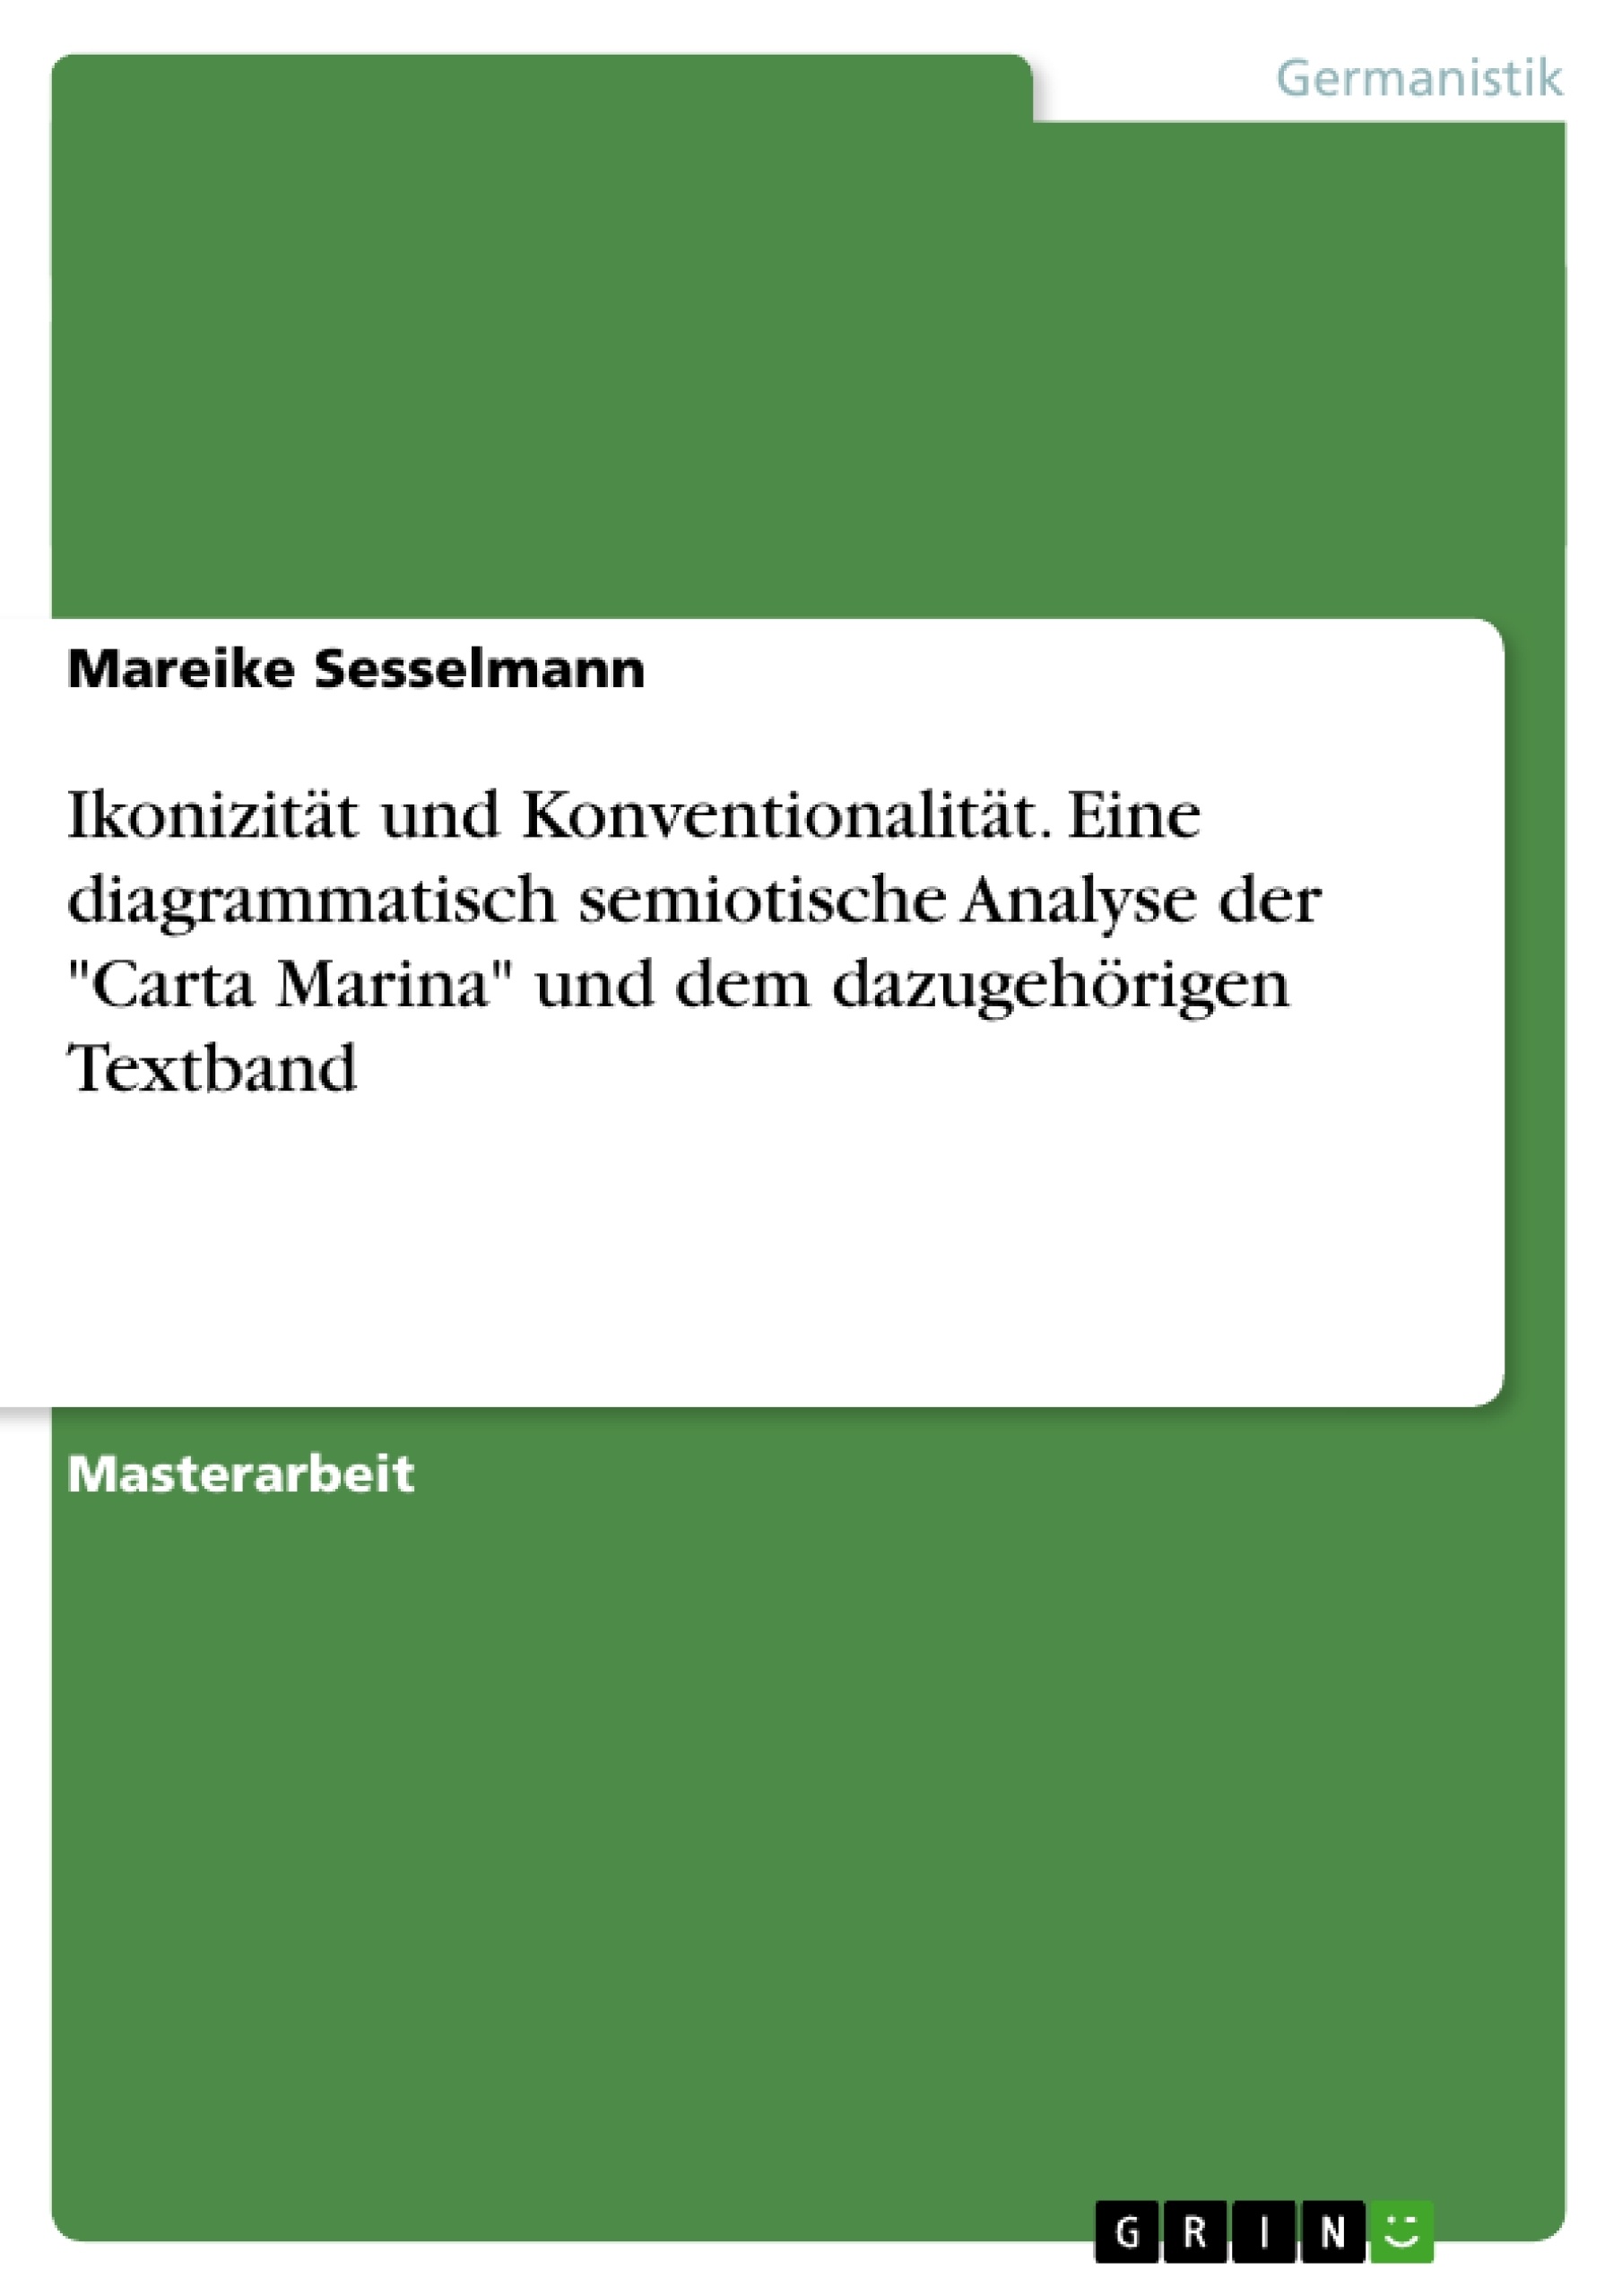 Title: Ikonizität und Konventionalität. Eine diagrammatisch semiotische Analyse der "Carta Marina" und dem dazugehörigen Textband